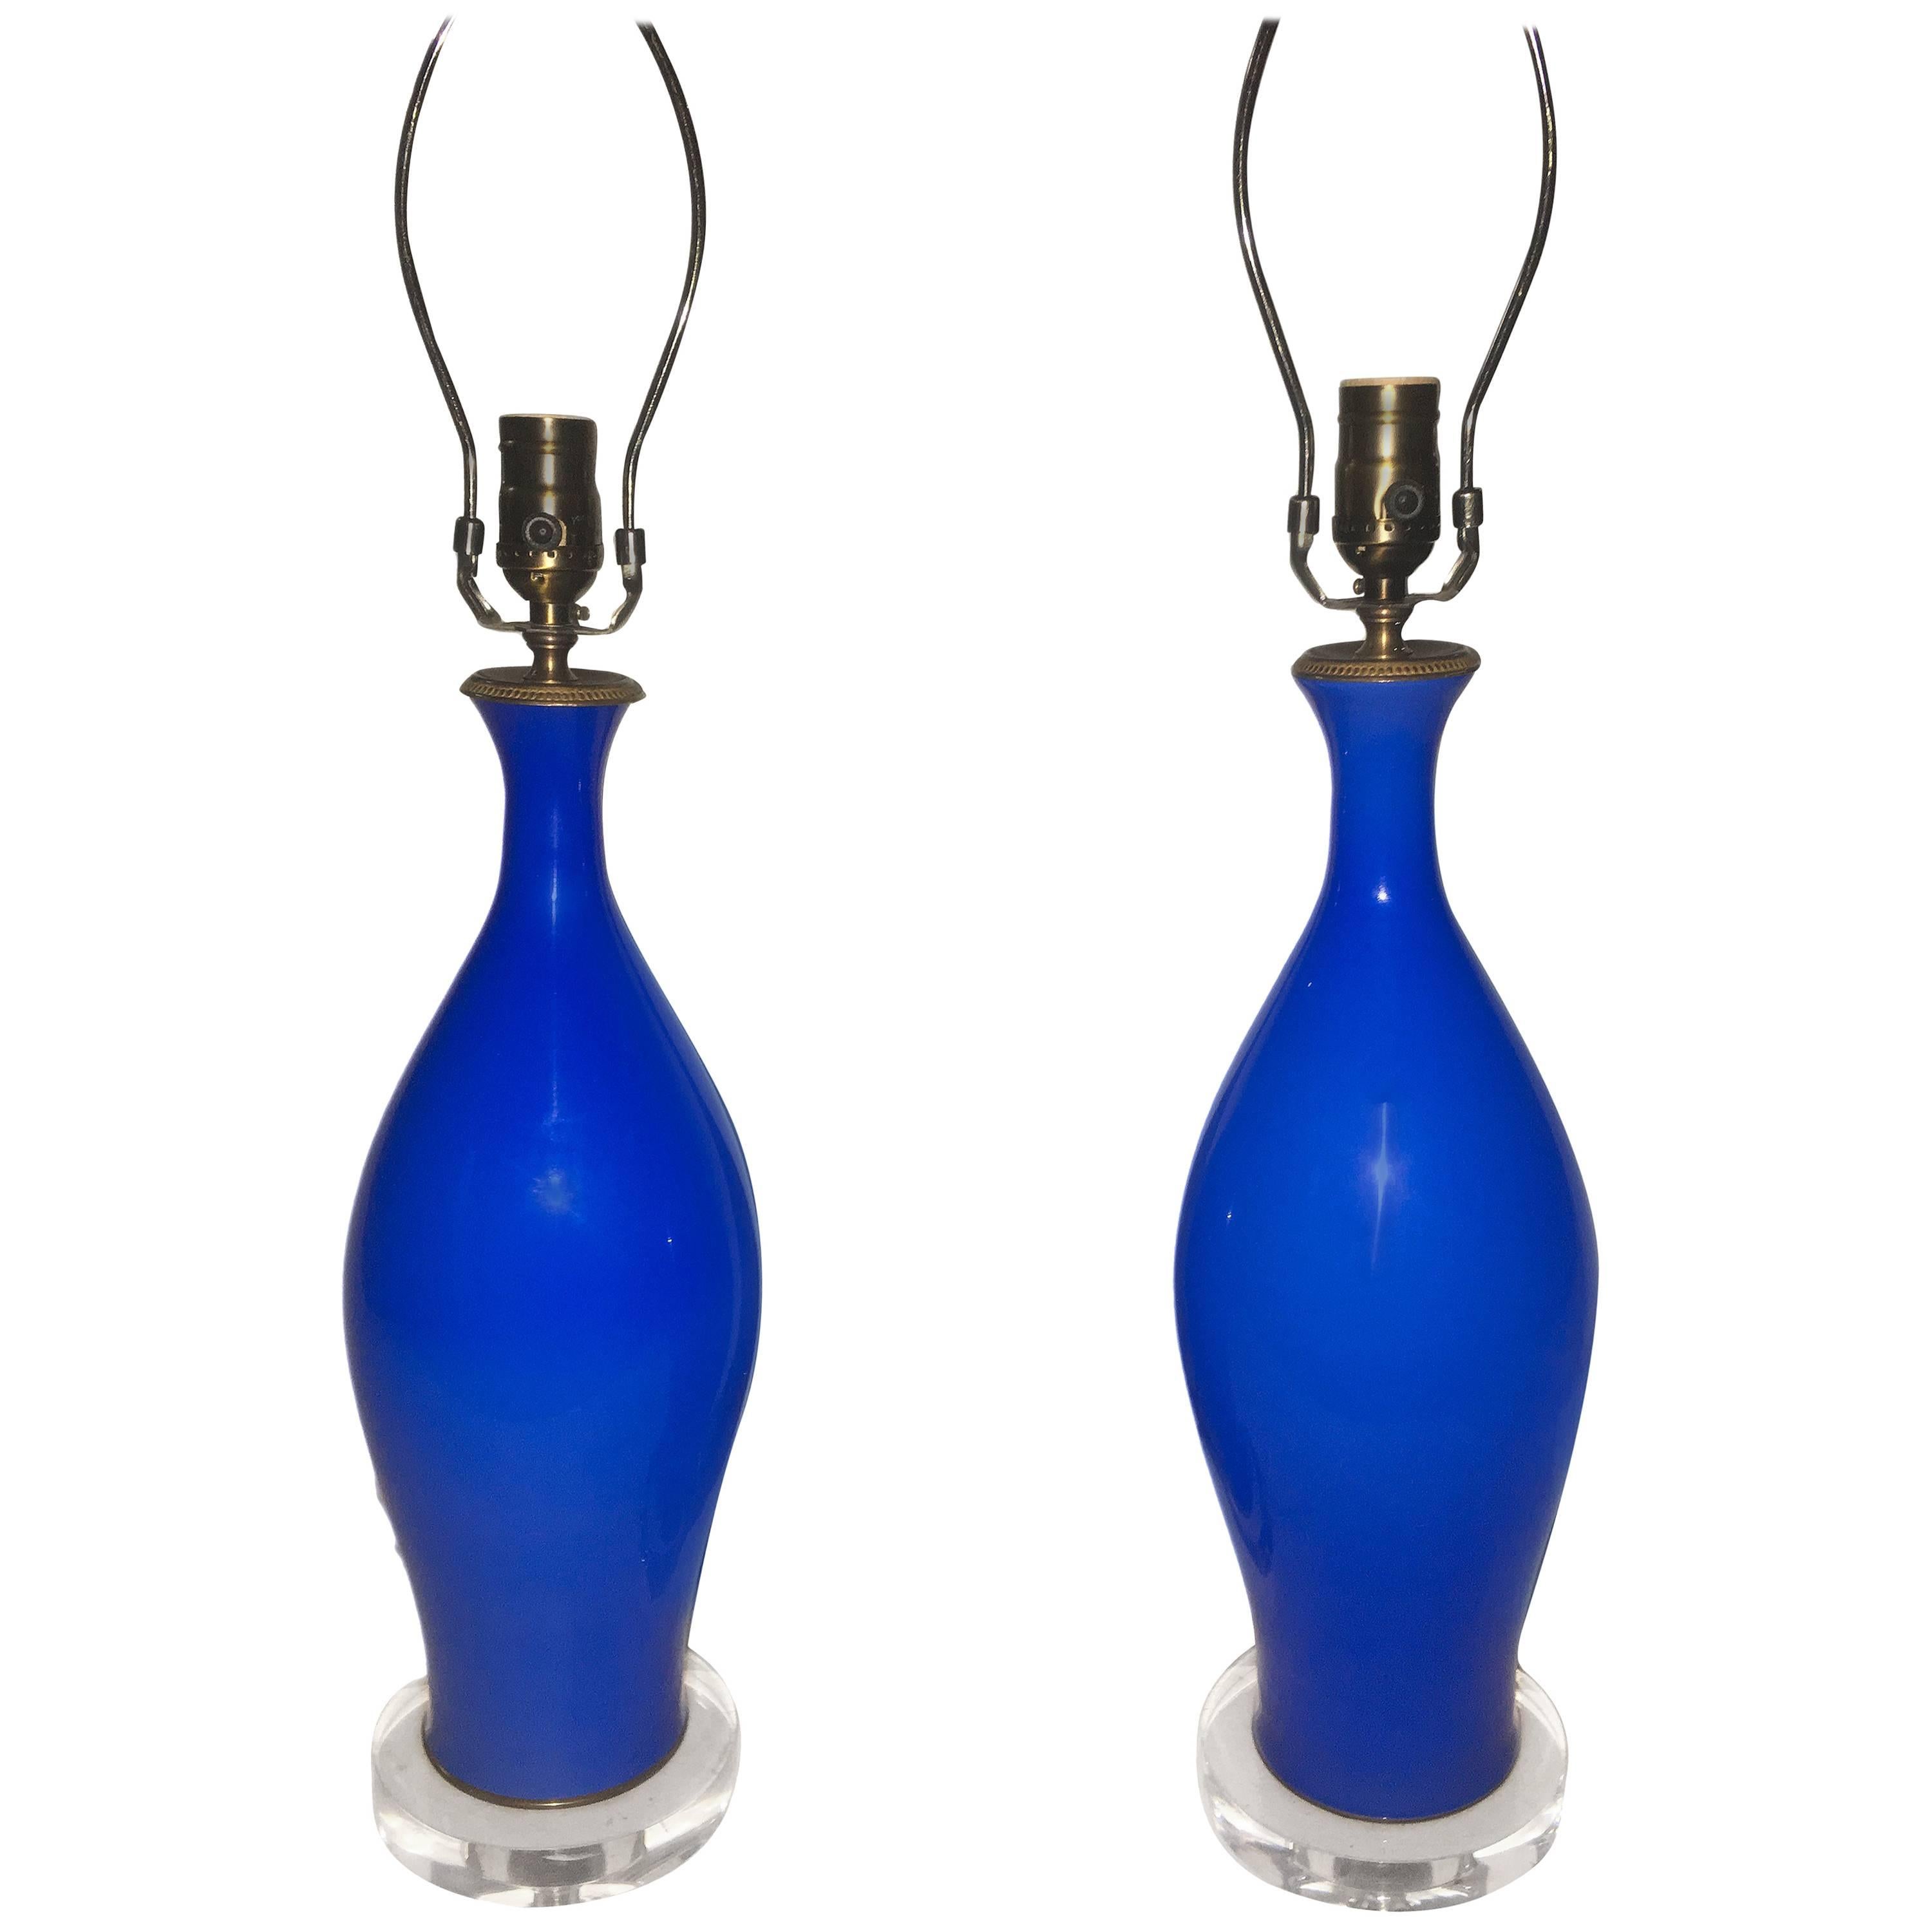 Paire de lampes de table italiennes en opaline bleue des années 1960 avec bases en lucite.

Mesures :
Hauteur du corps : 18